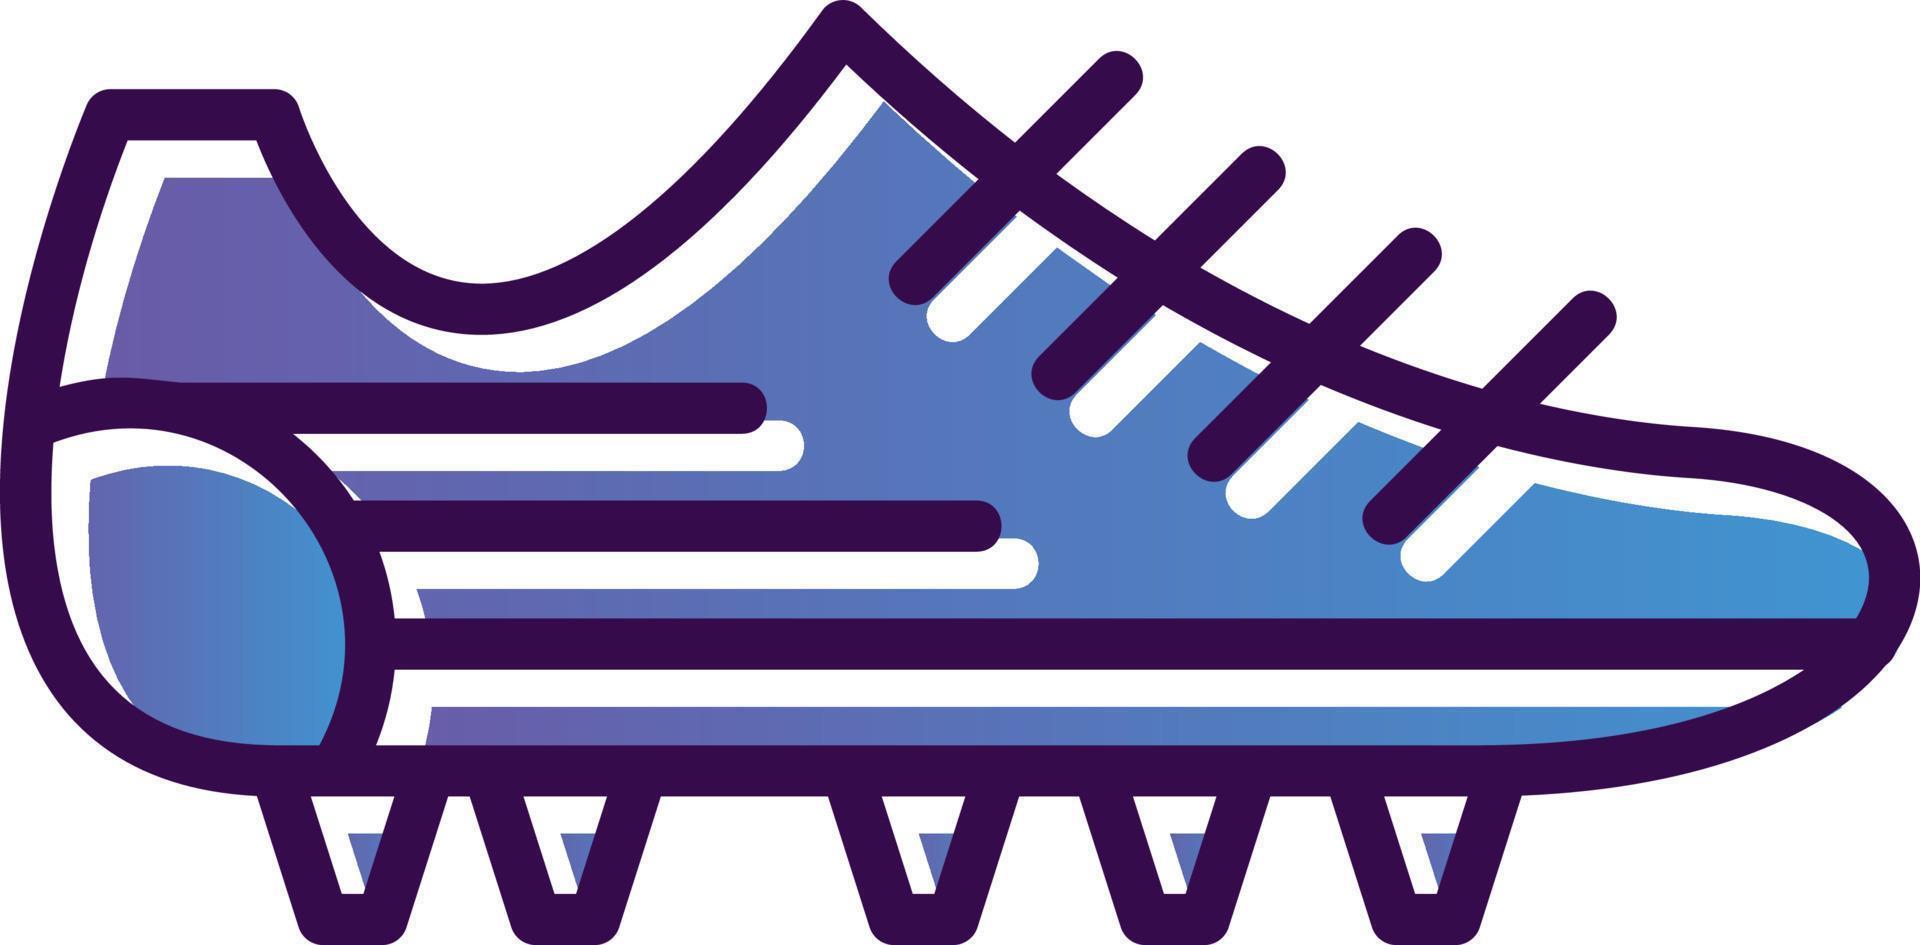 diseño de icono de vector de zapatos de fútbol